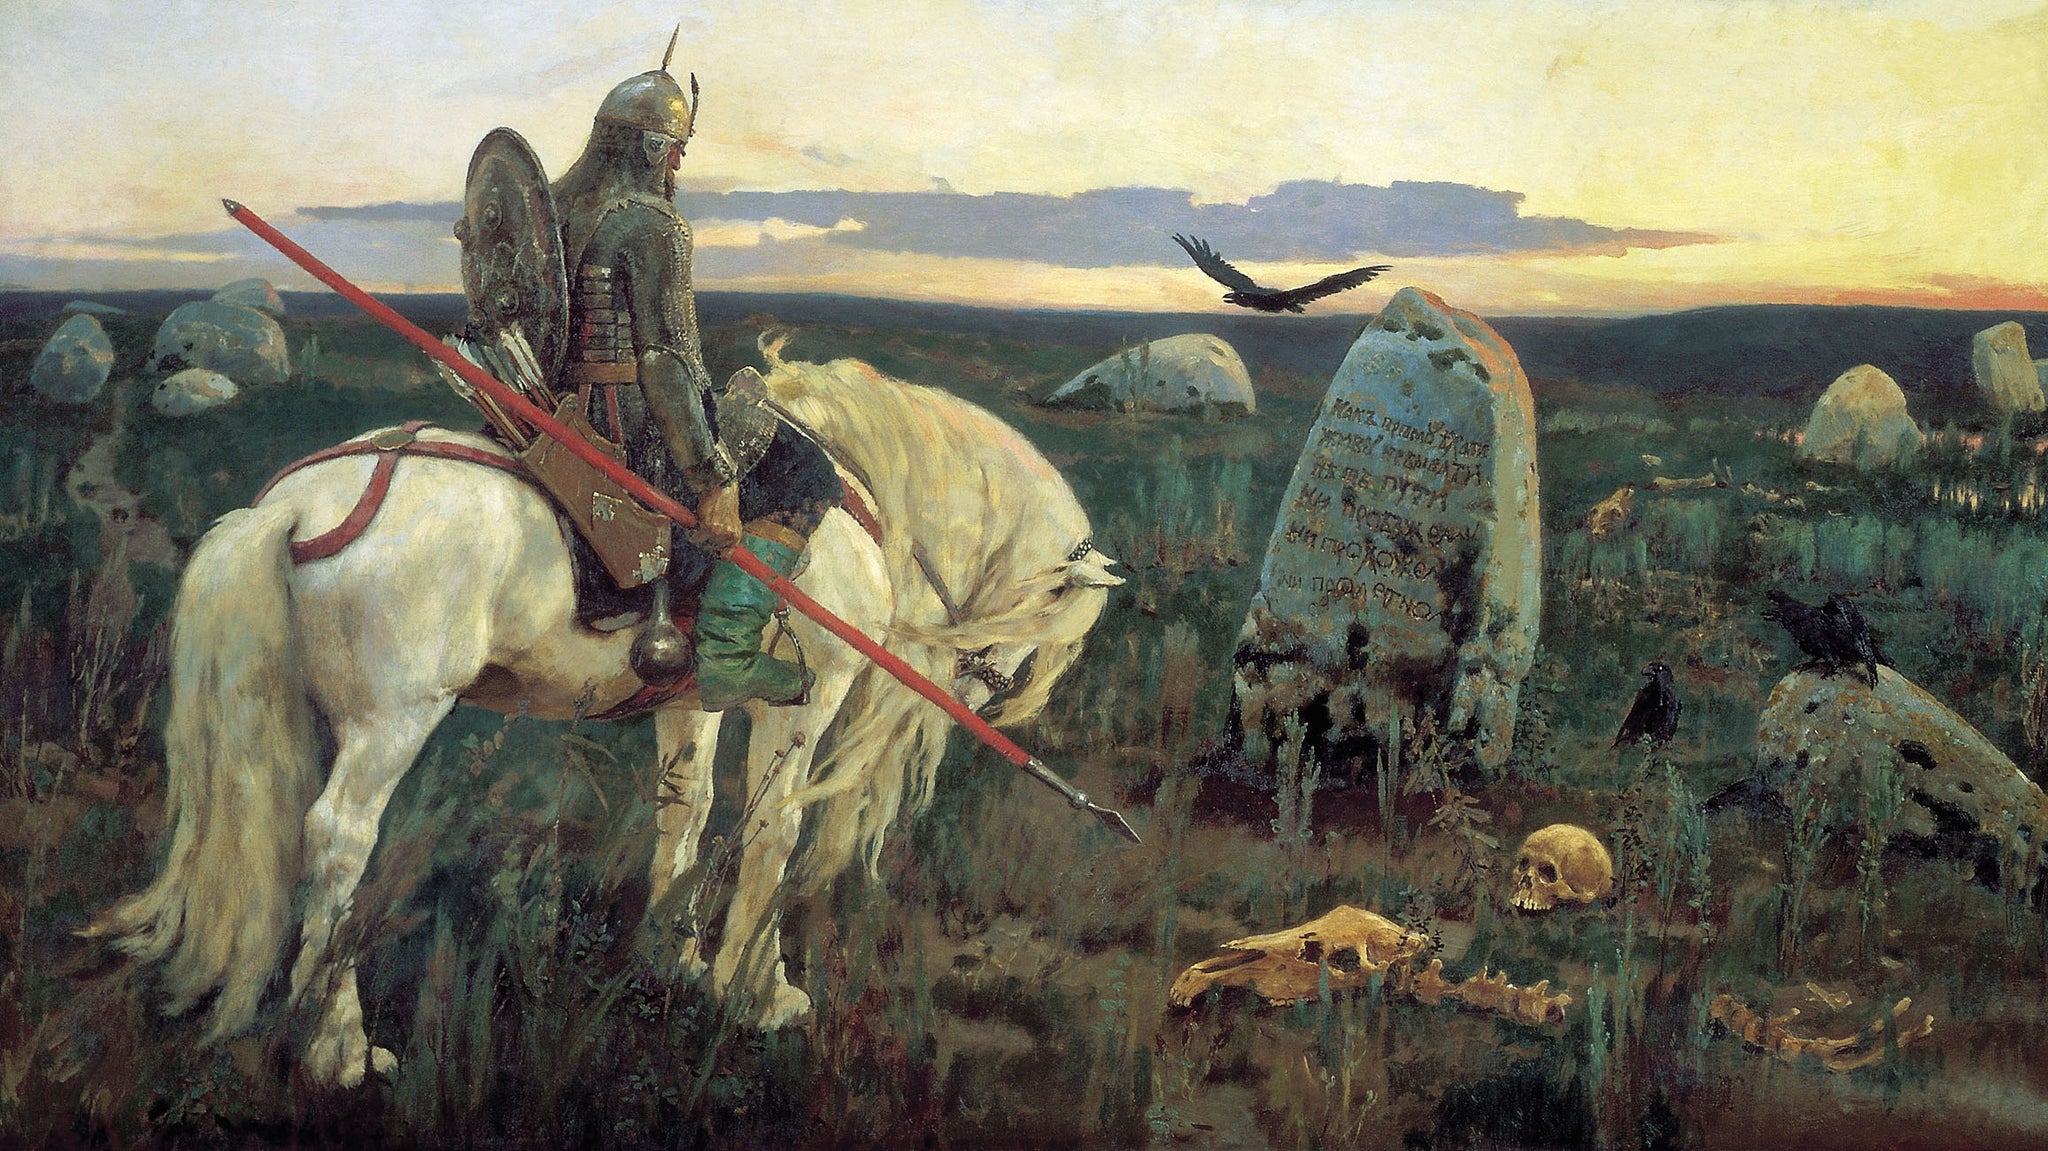 Un chevalier à la croisée des chemins - Viktor Vasnetsov